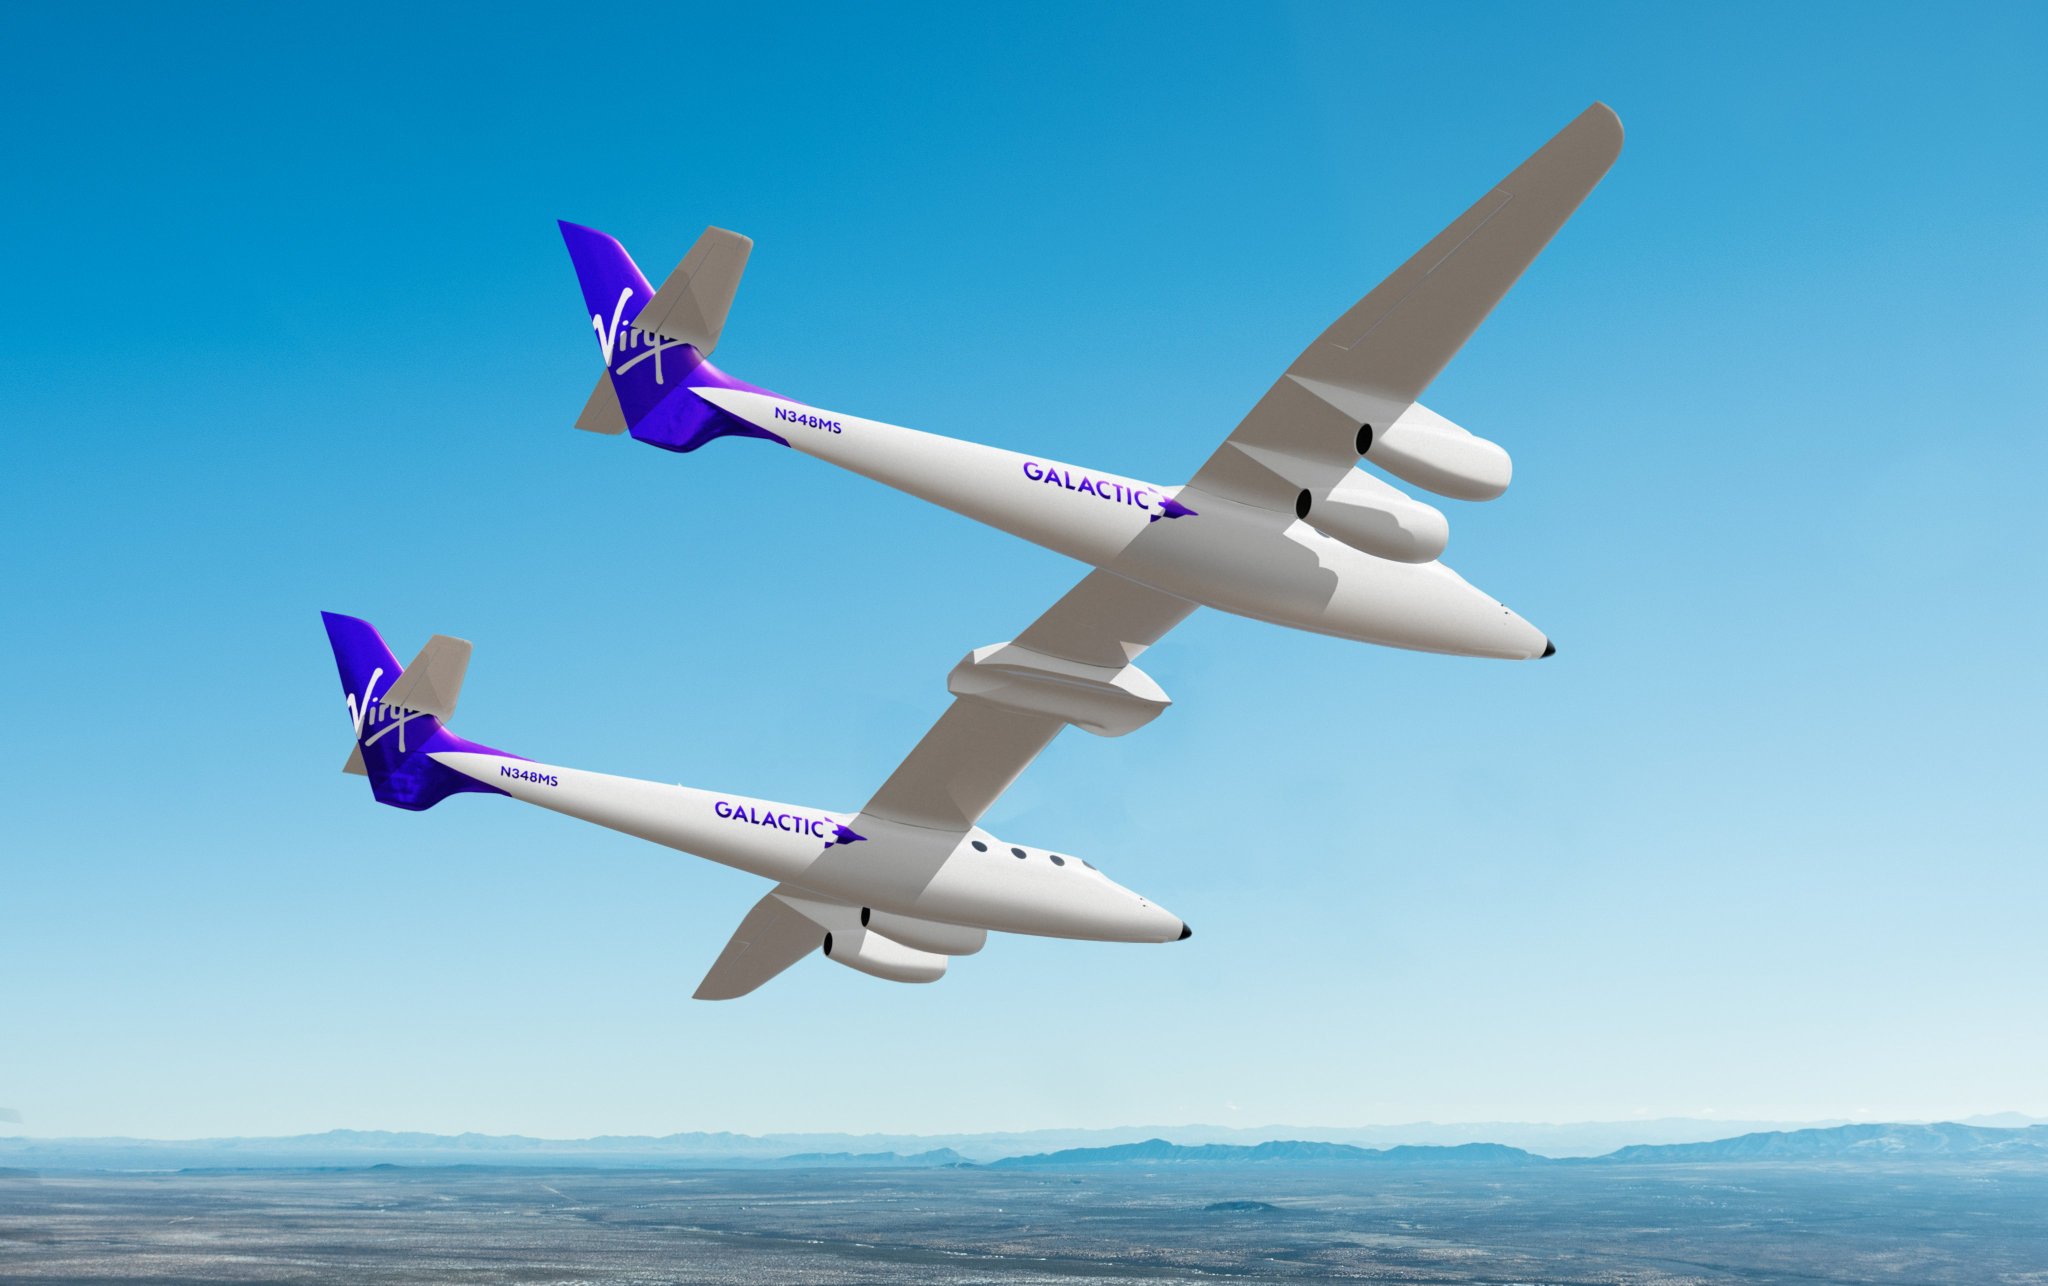 La Nasa et Boeing investissent 1 milliard de dollars pour l'avion